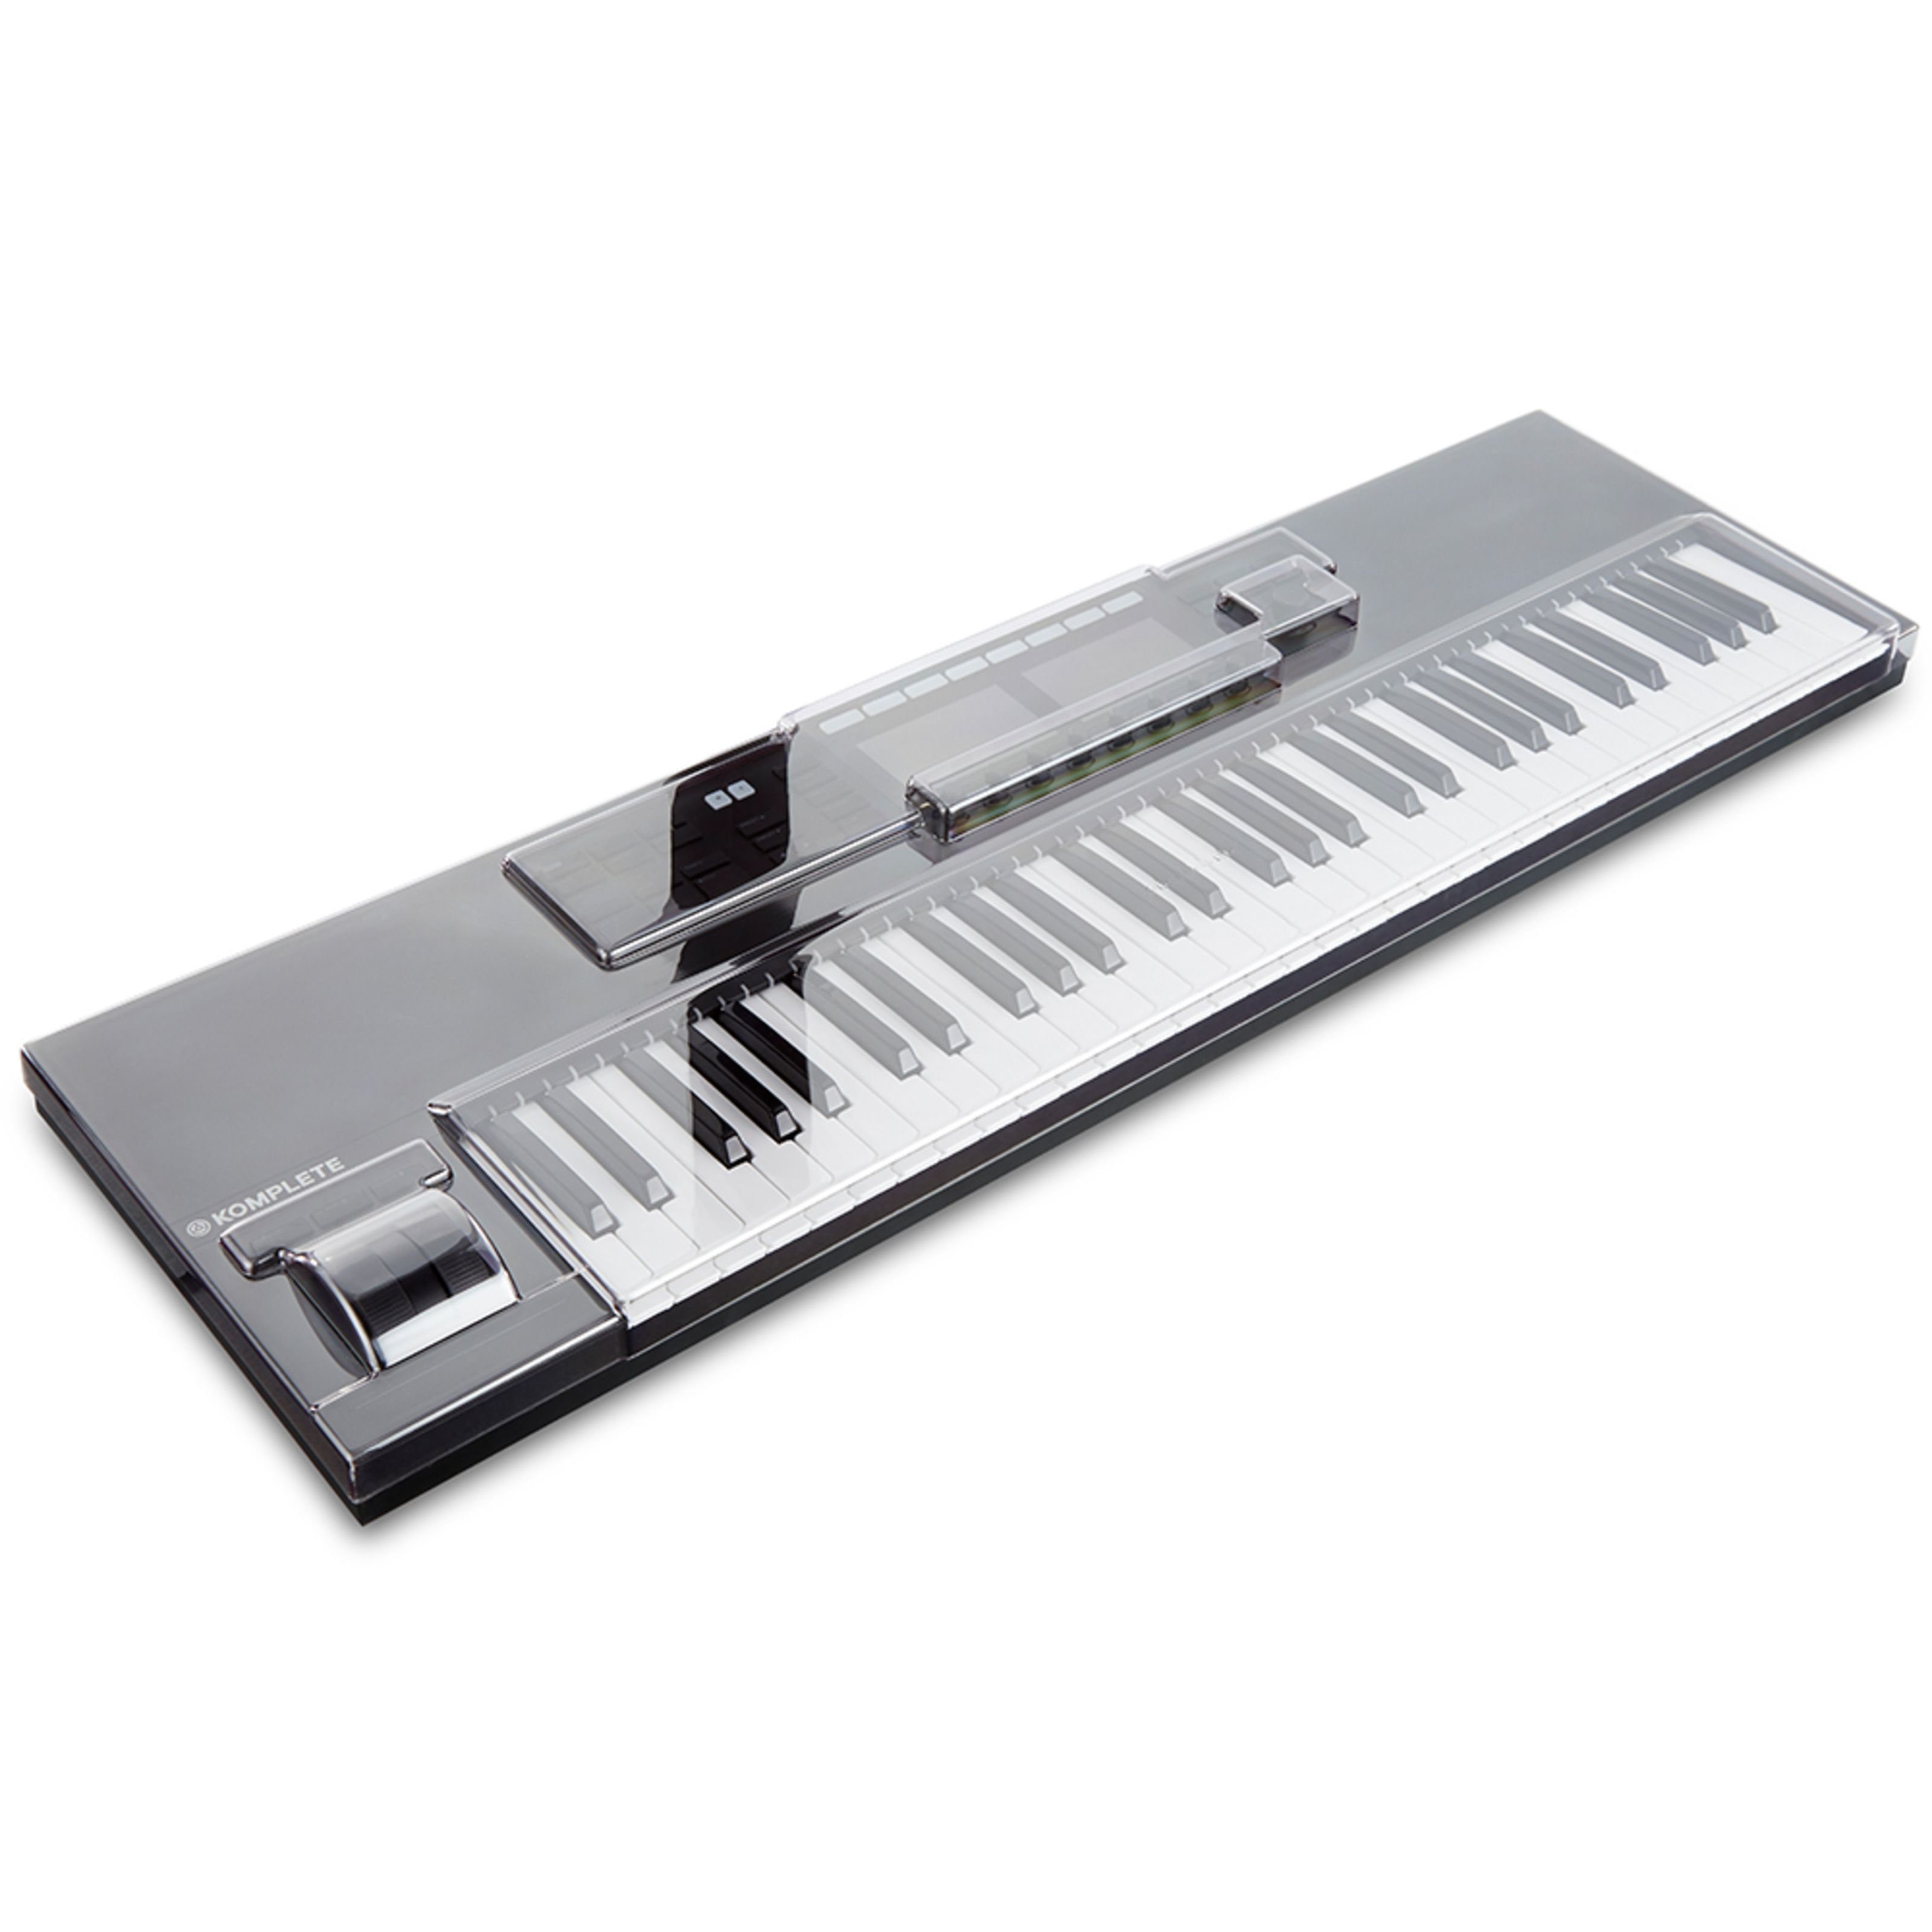 Decksaver Spielzeug-Musikinstrument, NI Kontrol S61 MK2 Cover - Abdeckung für Keyboards